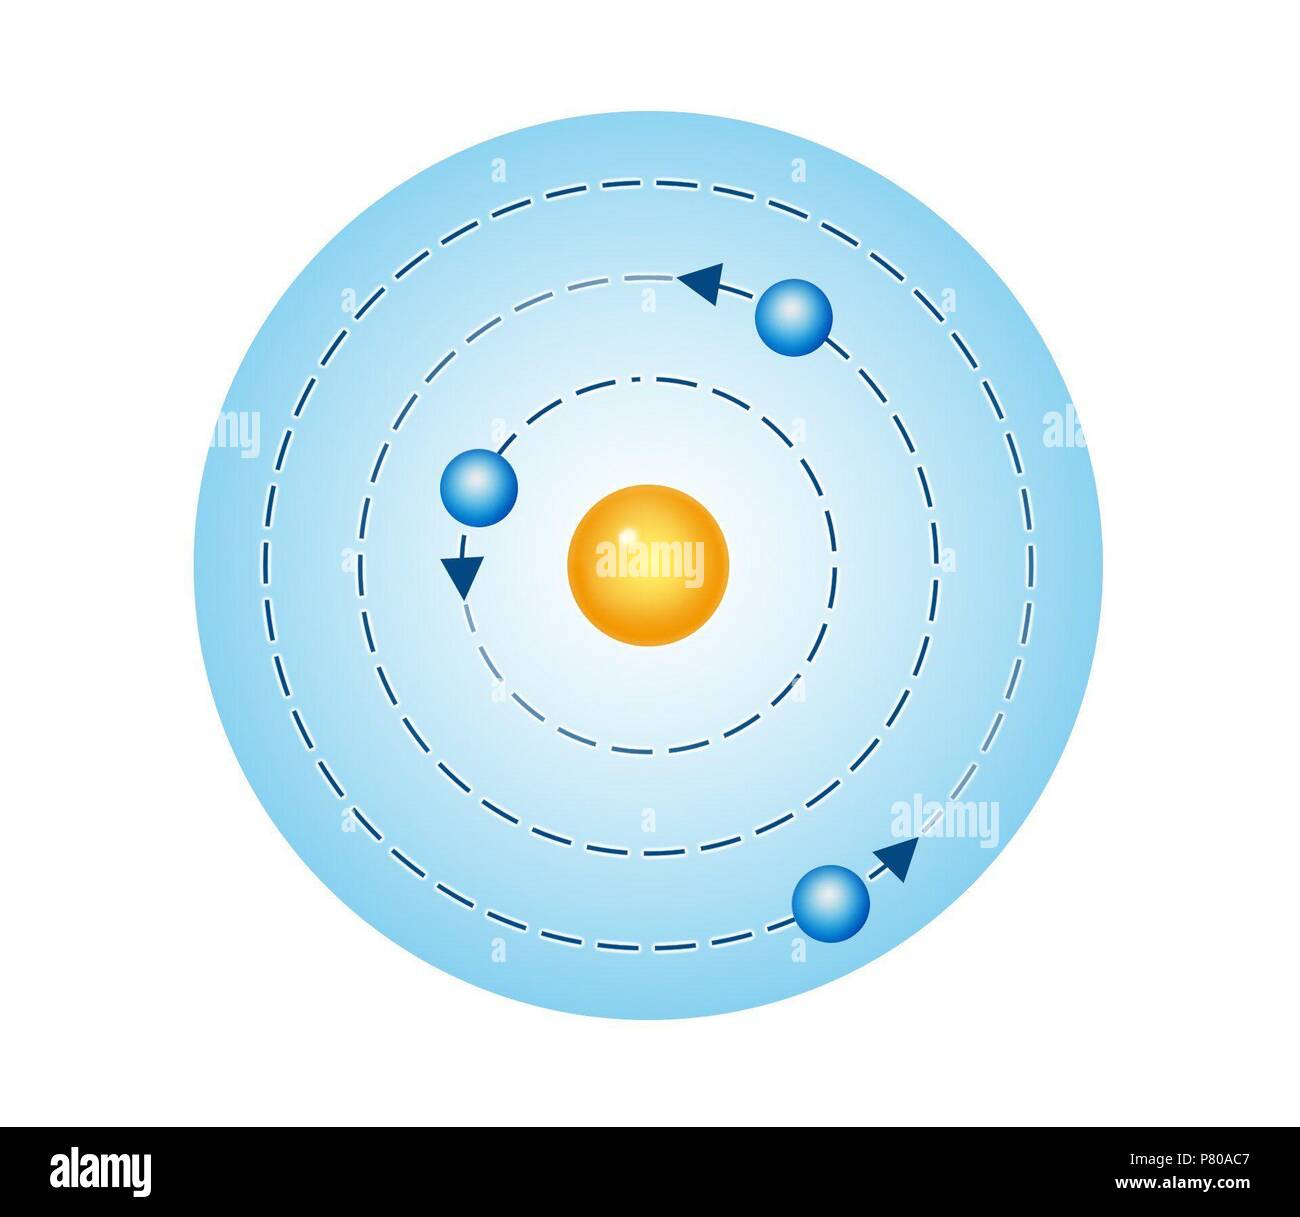 Atom Modelo Atómico De Niels Bohr Foto Imagen De Stock